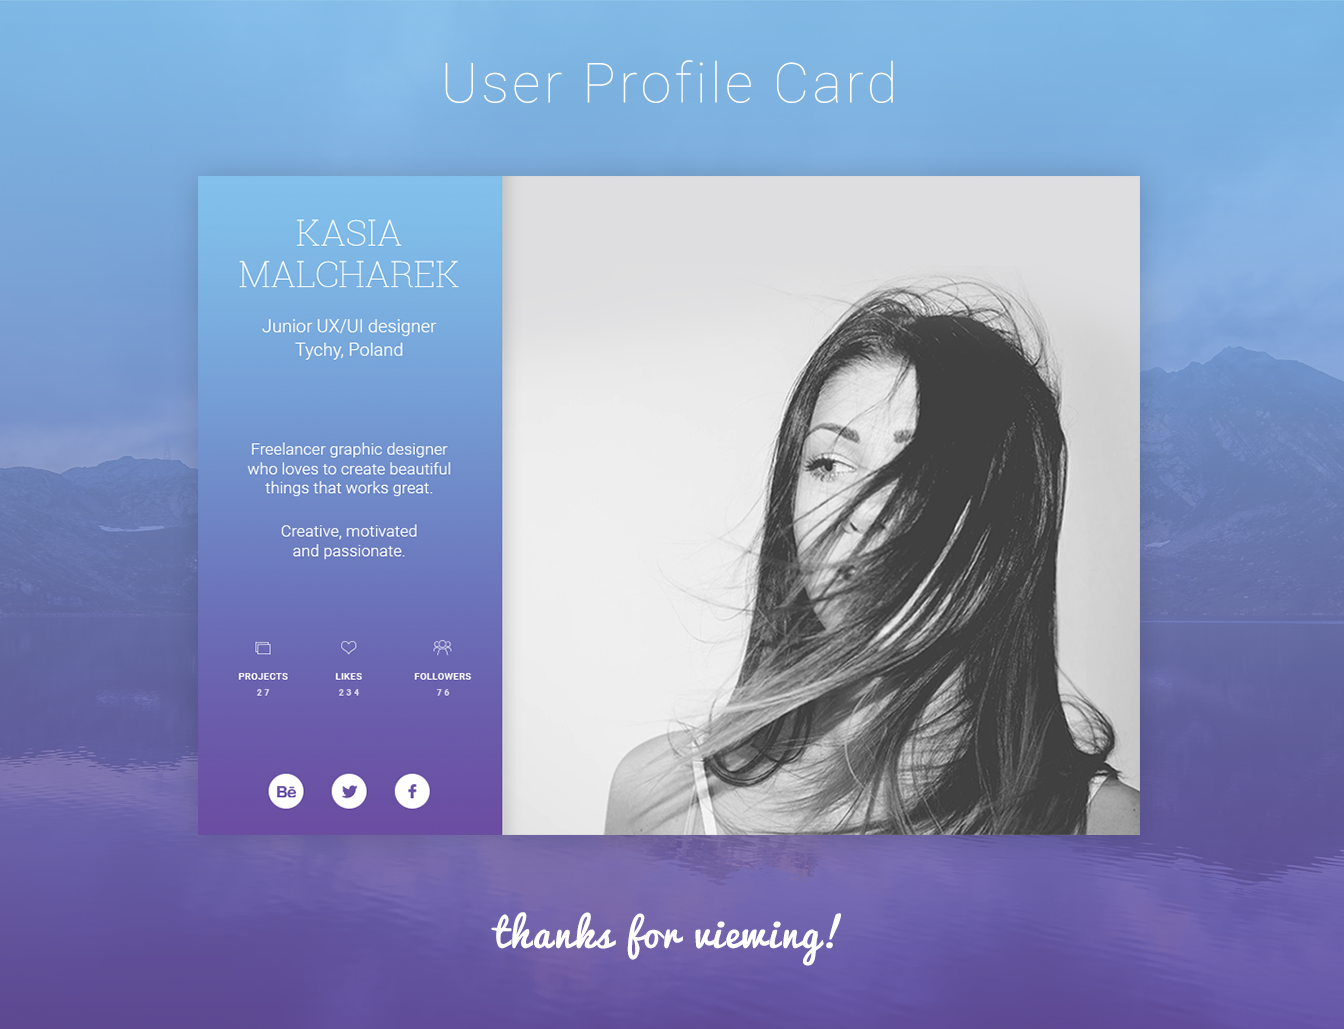 Am user profile. Профиль пользователя дизайн. User profile Design UI. User profile Design web. Профайл дизайн.